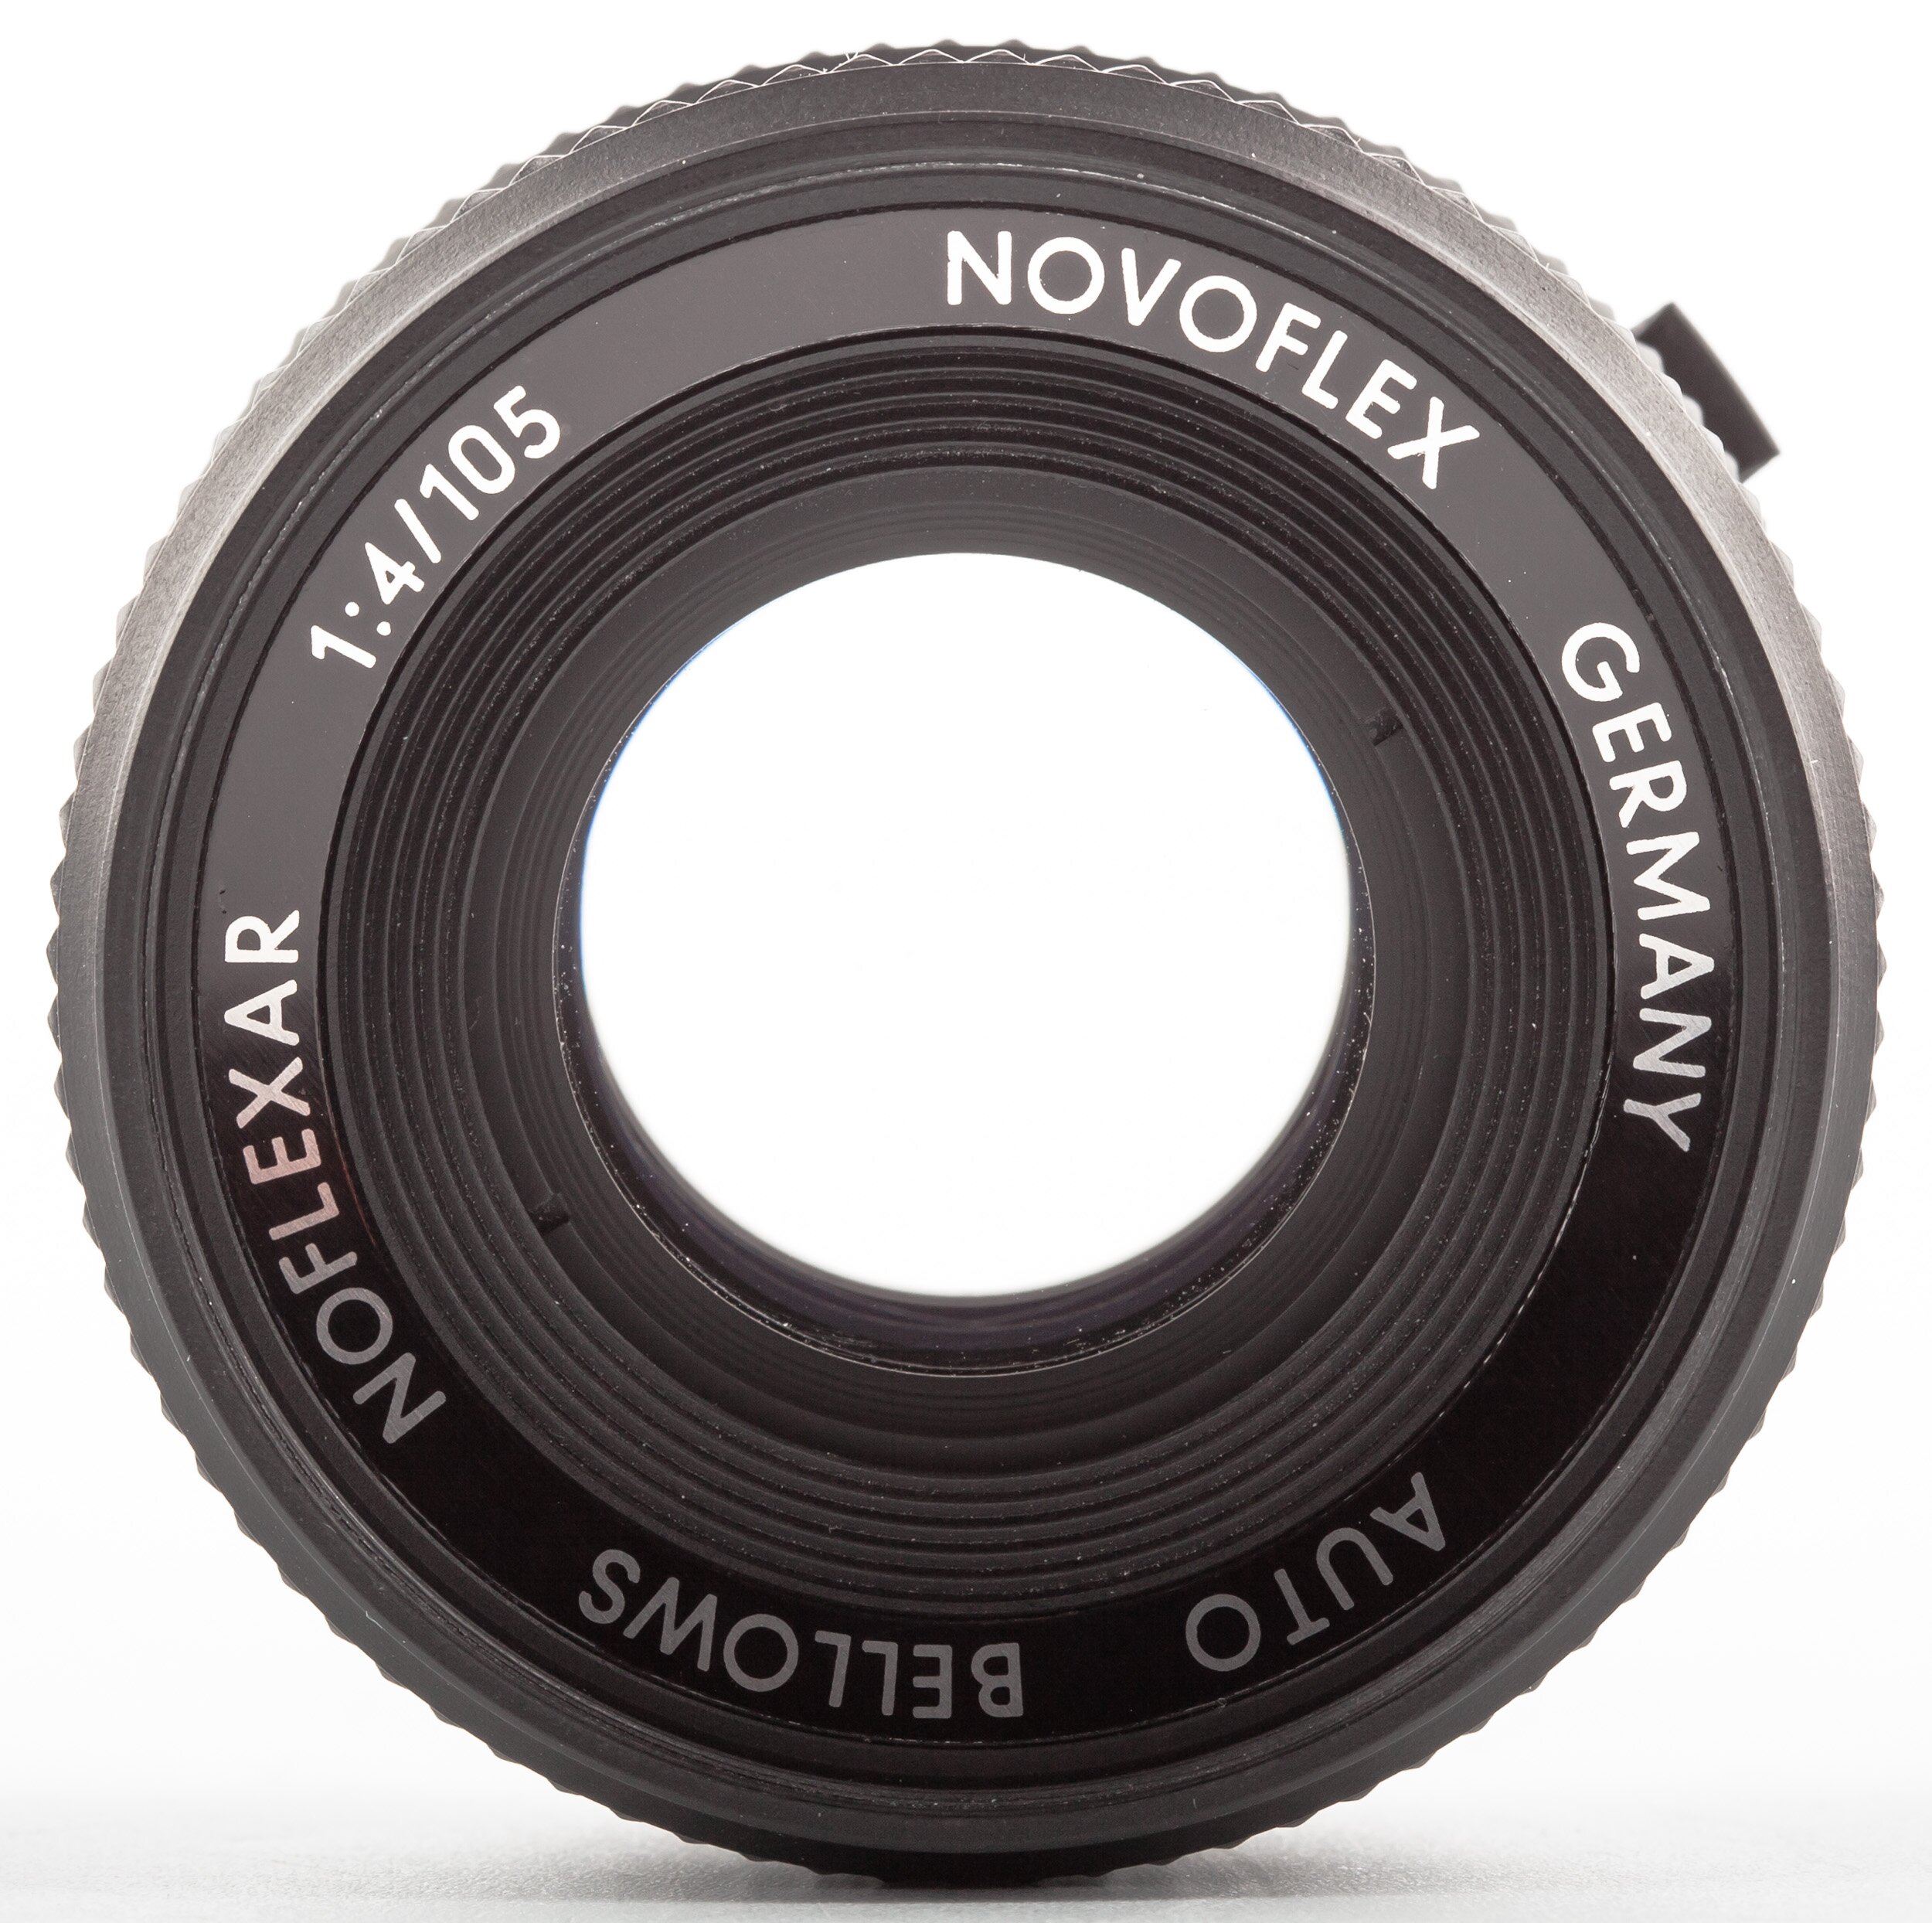 Novoflex Noflexar 105mm 1:4 Minolta Minolta MD